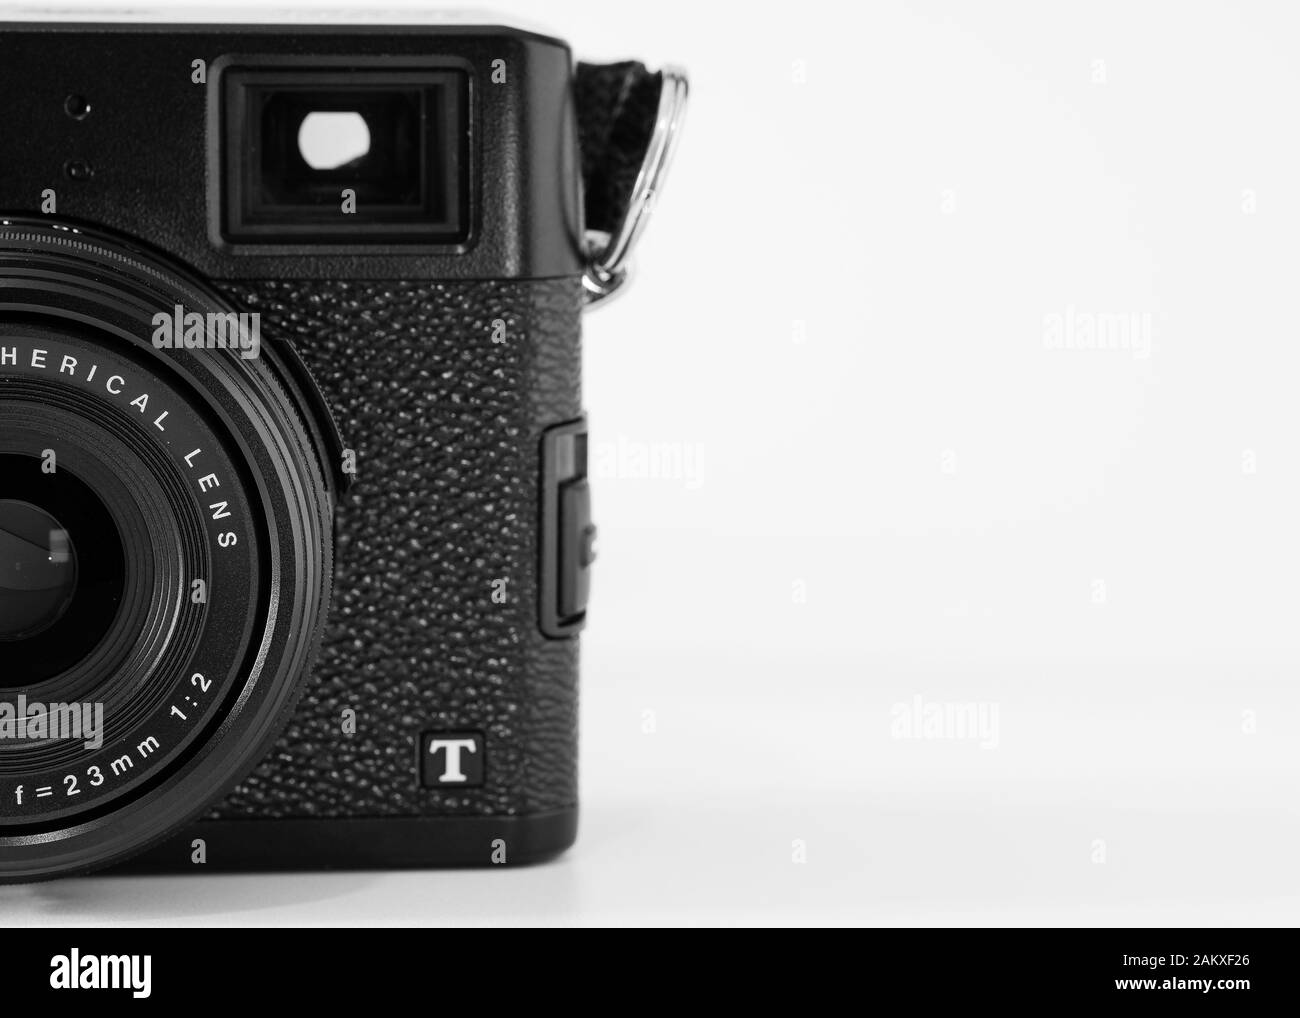 Vista parziale di una fotocamera digitale compatta, marca Fujifilm, modello X100T, mirino ottico visibile, immagine monocromatica. Foto Stock